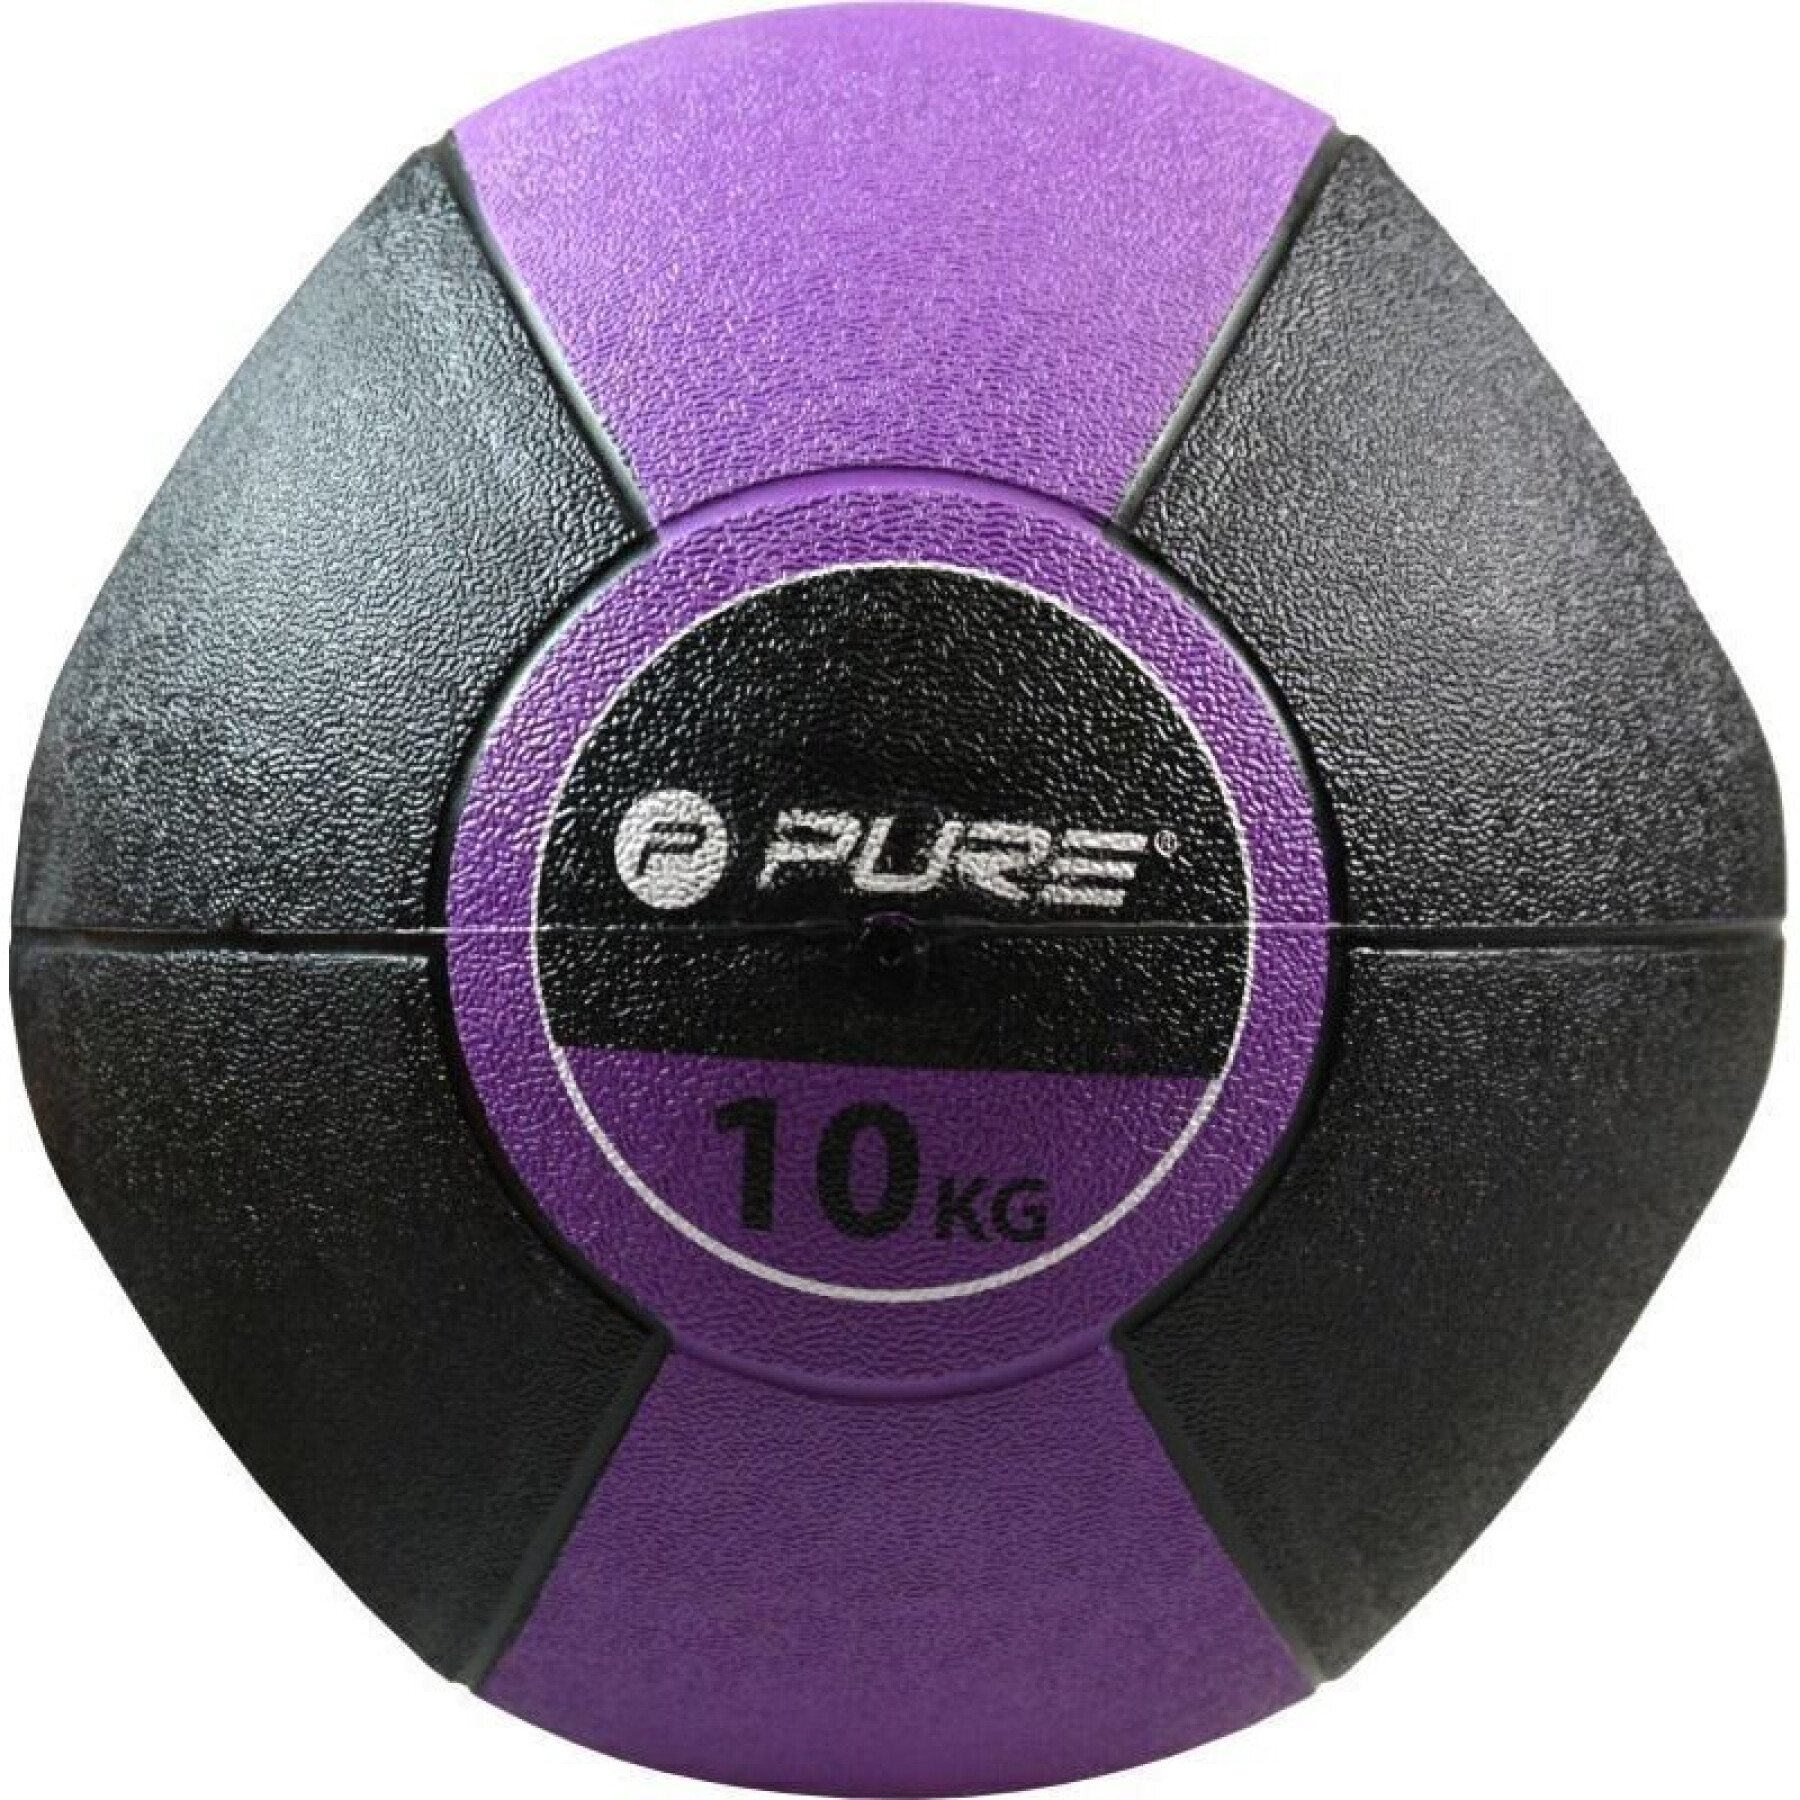 Medicine ball Pure2Improve handles 10Kg